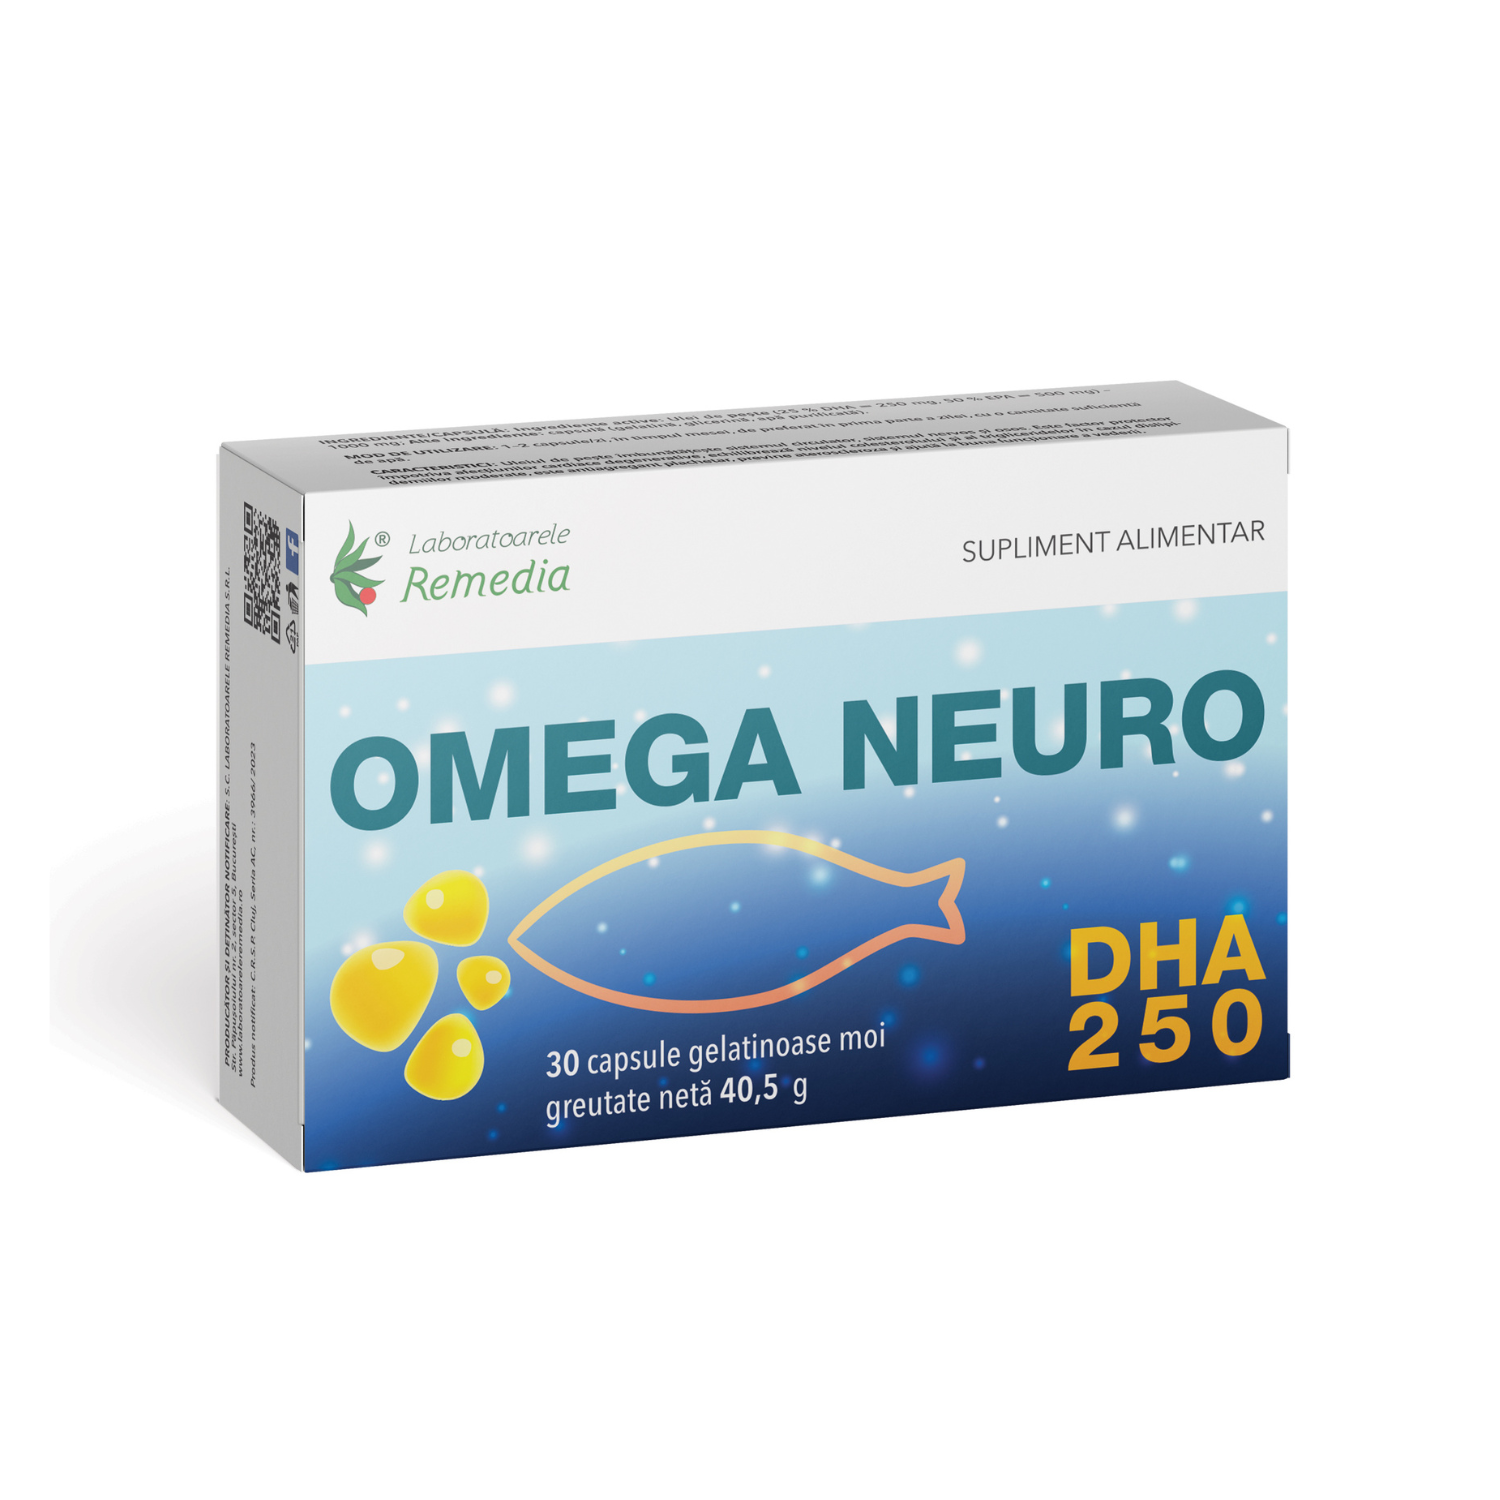 Omega Neuro, 30 capsule moi, Remedia